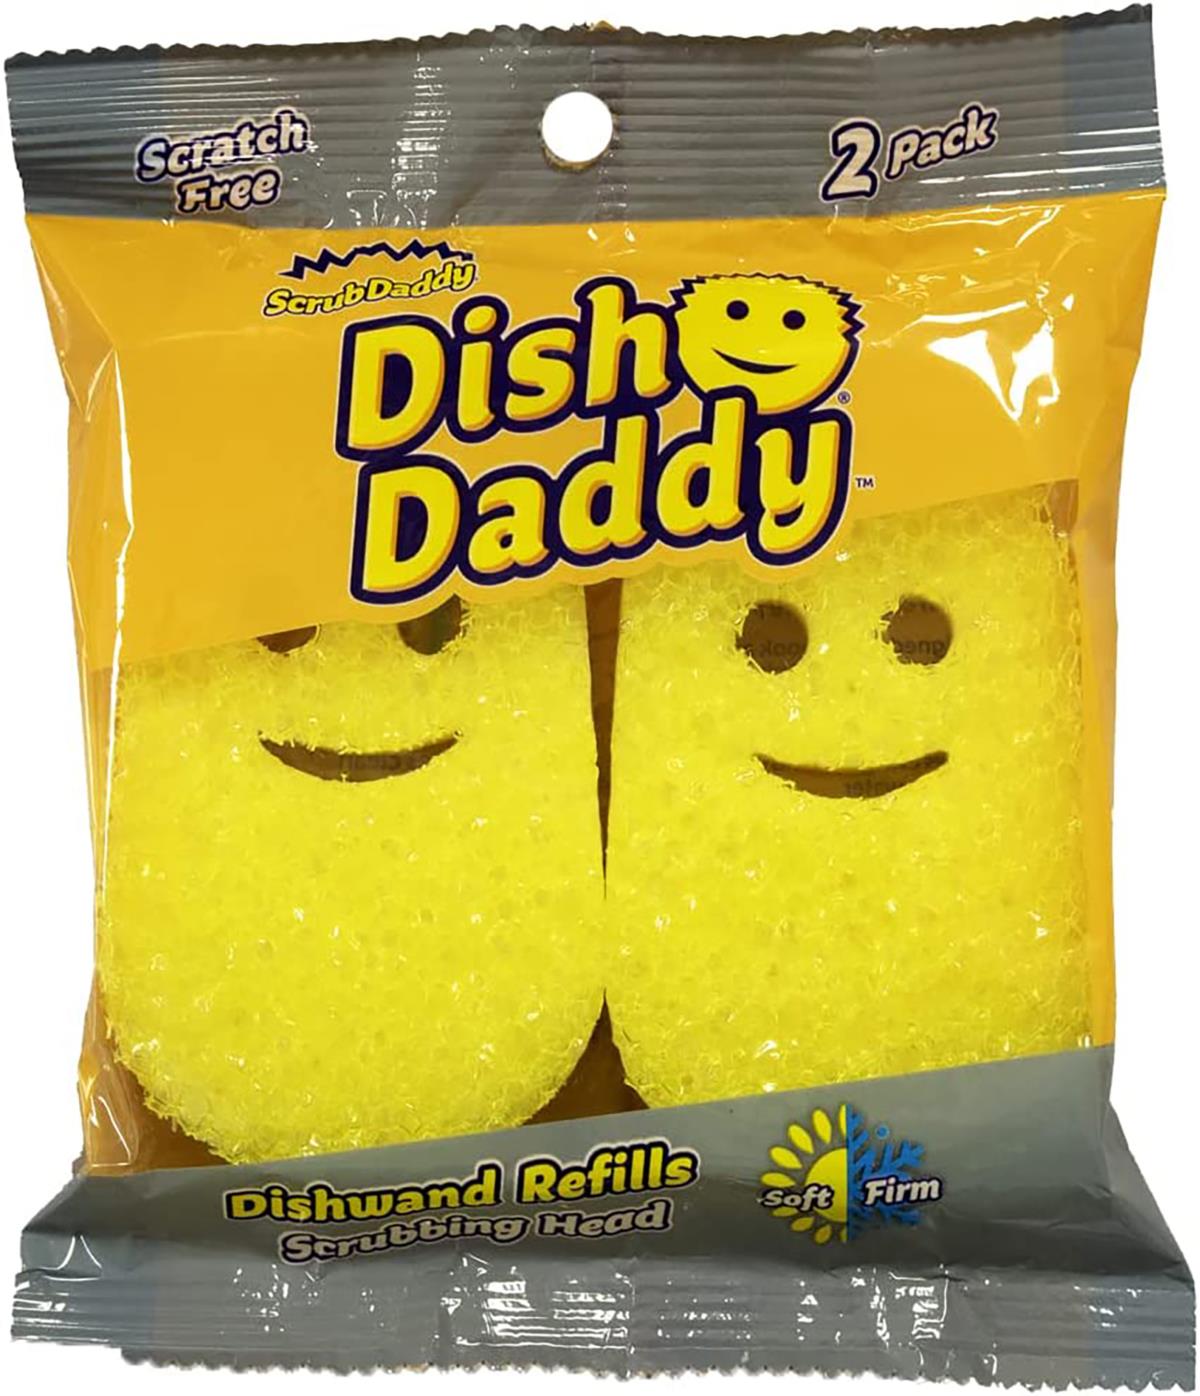 DishDaddy - Scrub Daddy Soap Dispensing Dishwand